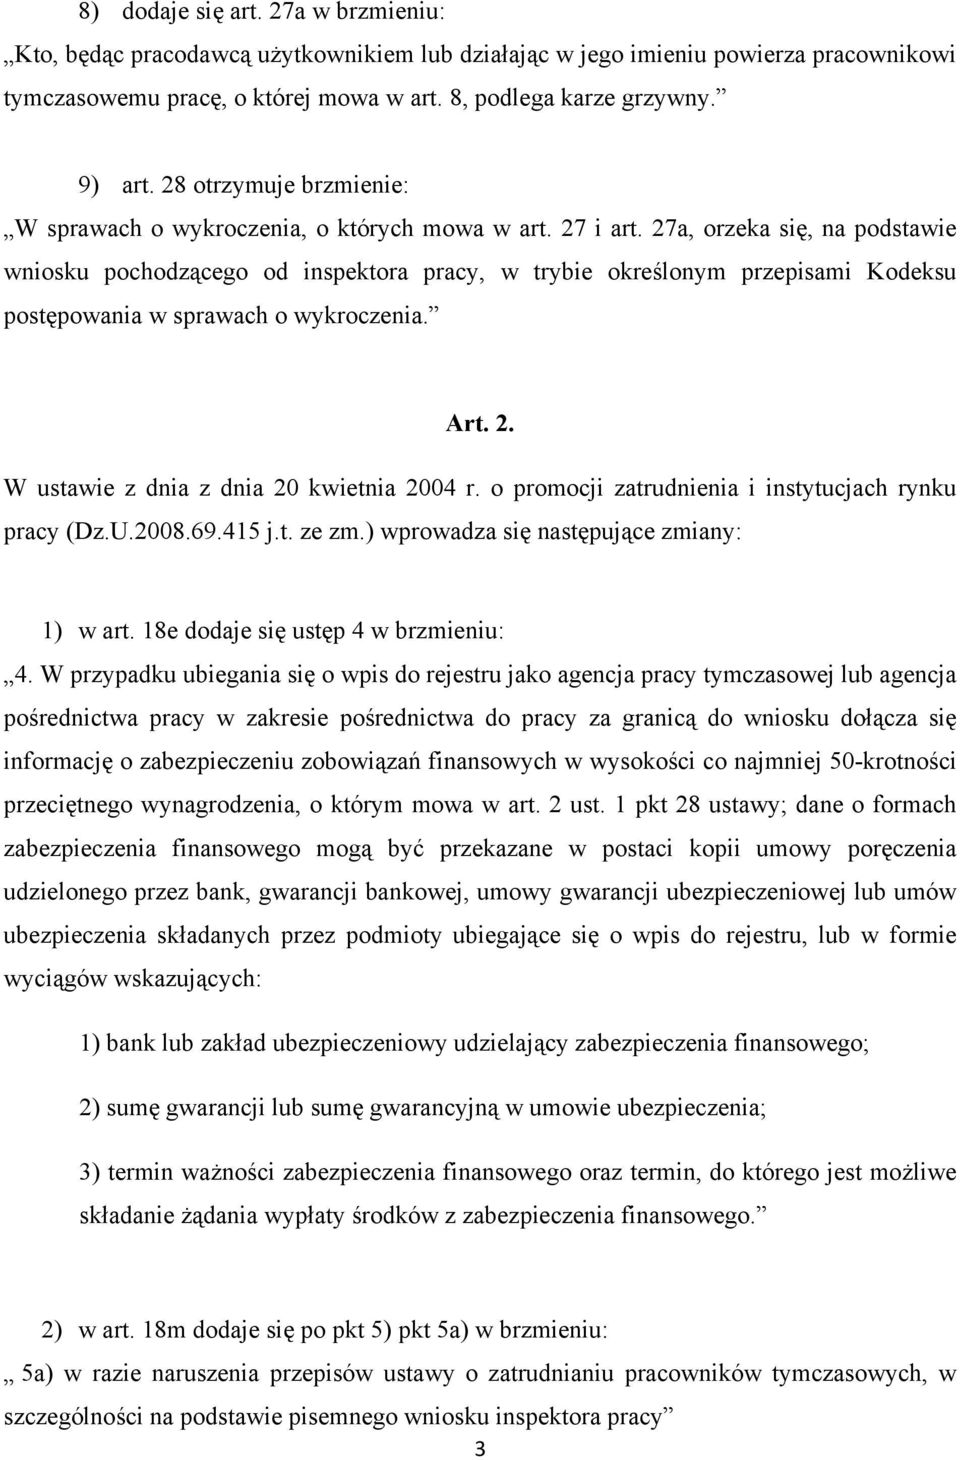 27a, orzeka się, na podstawie wniosku pochodzącego od inspektora pracy, w trybie określonym przepisami Kodeksu postępowania w sprawach o wykroczenia. Art. 2.